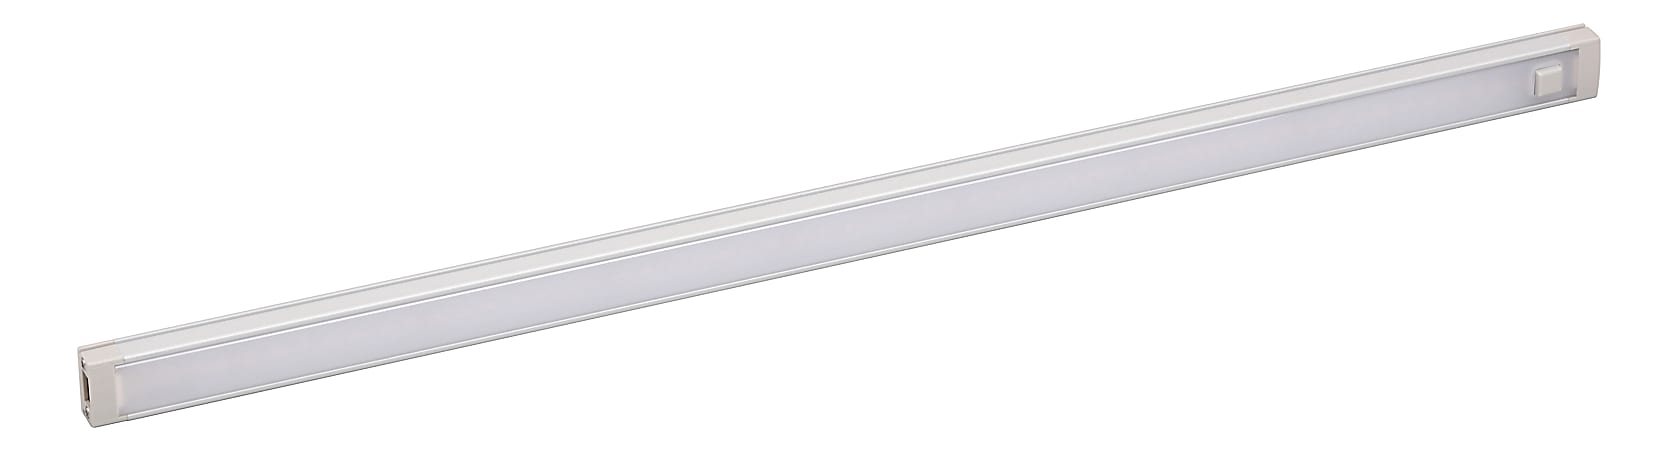 Black+decker 1-Bar Under-Cabinet LED Lighting Kit, 18, Cool White